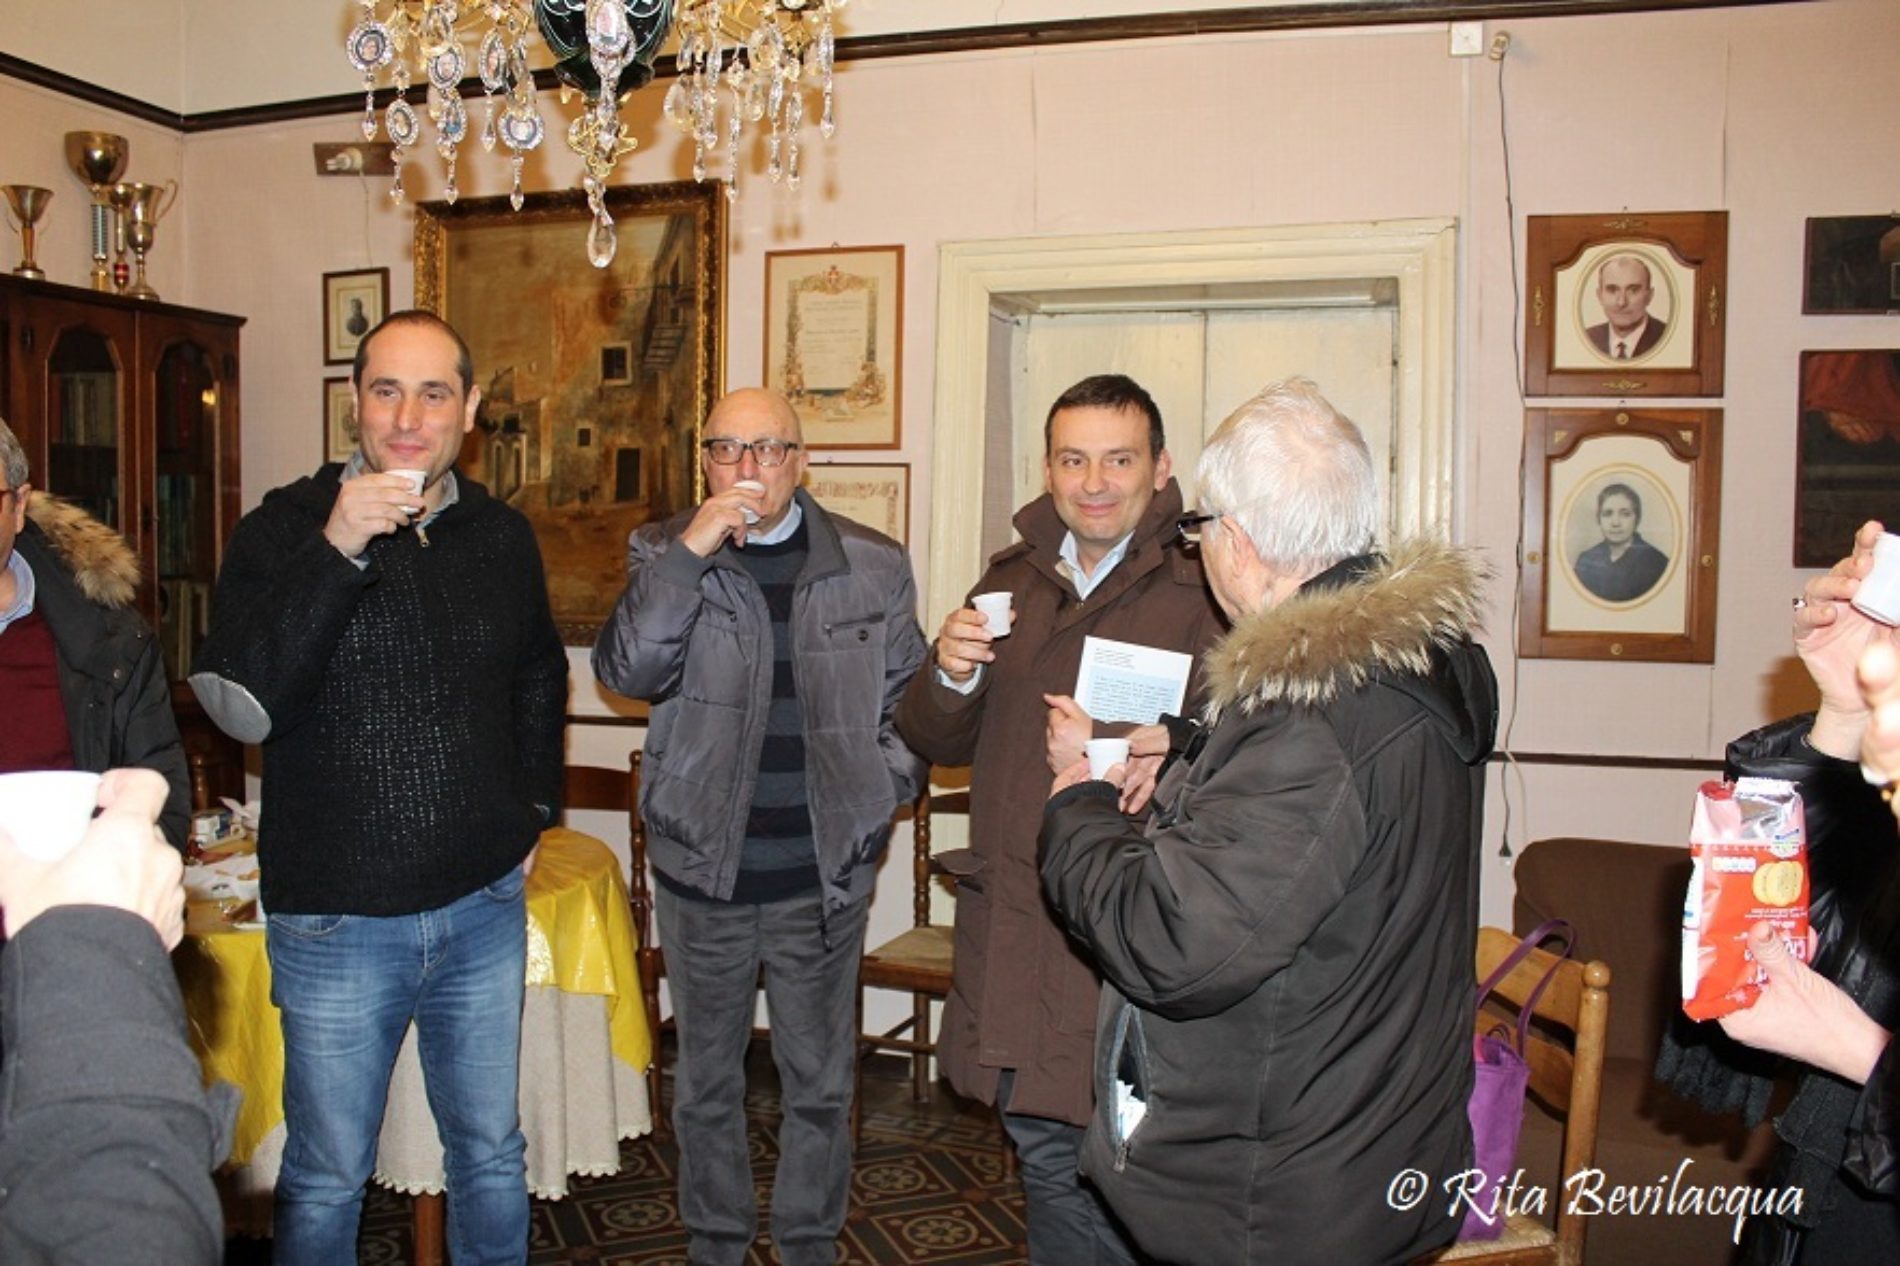 Il Salotto artistico – letterario “Civico 49” incontra per la terza volta il sindaco Fabio Accardi